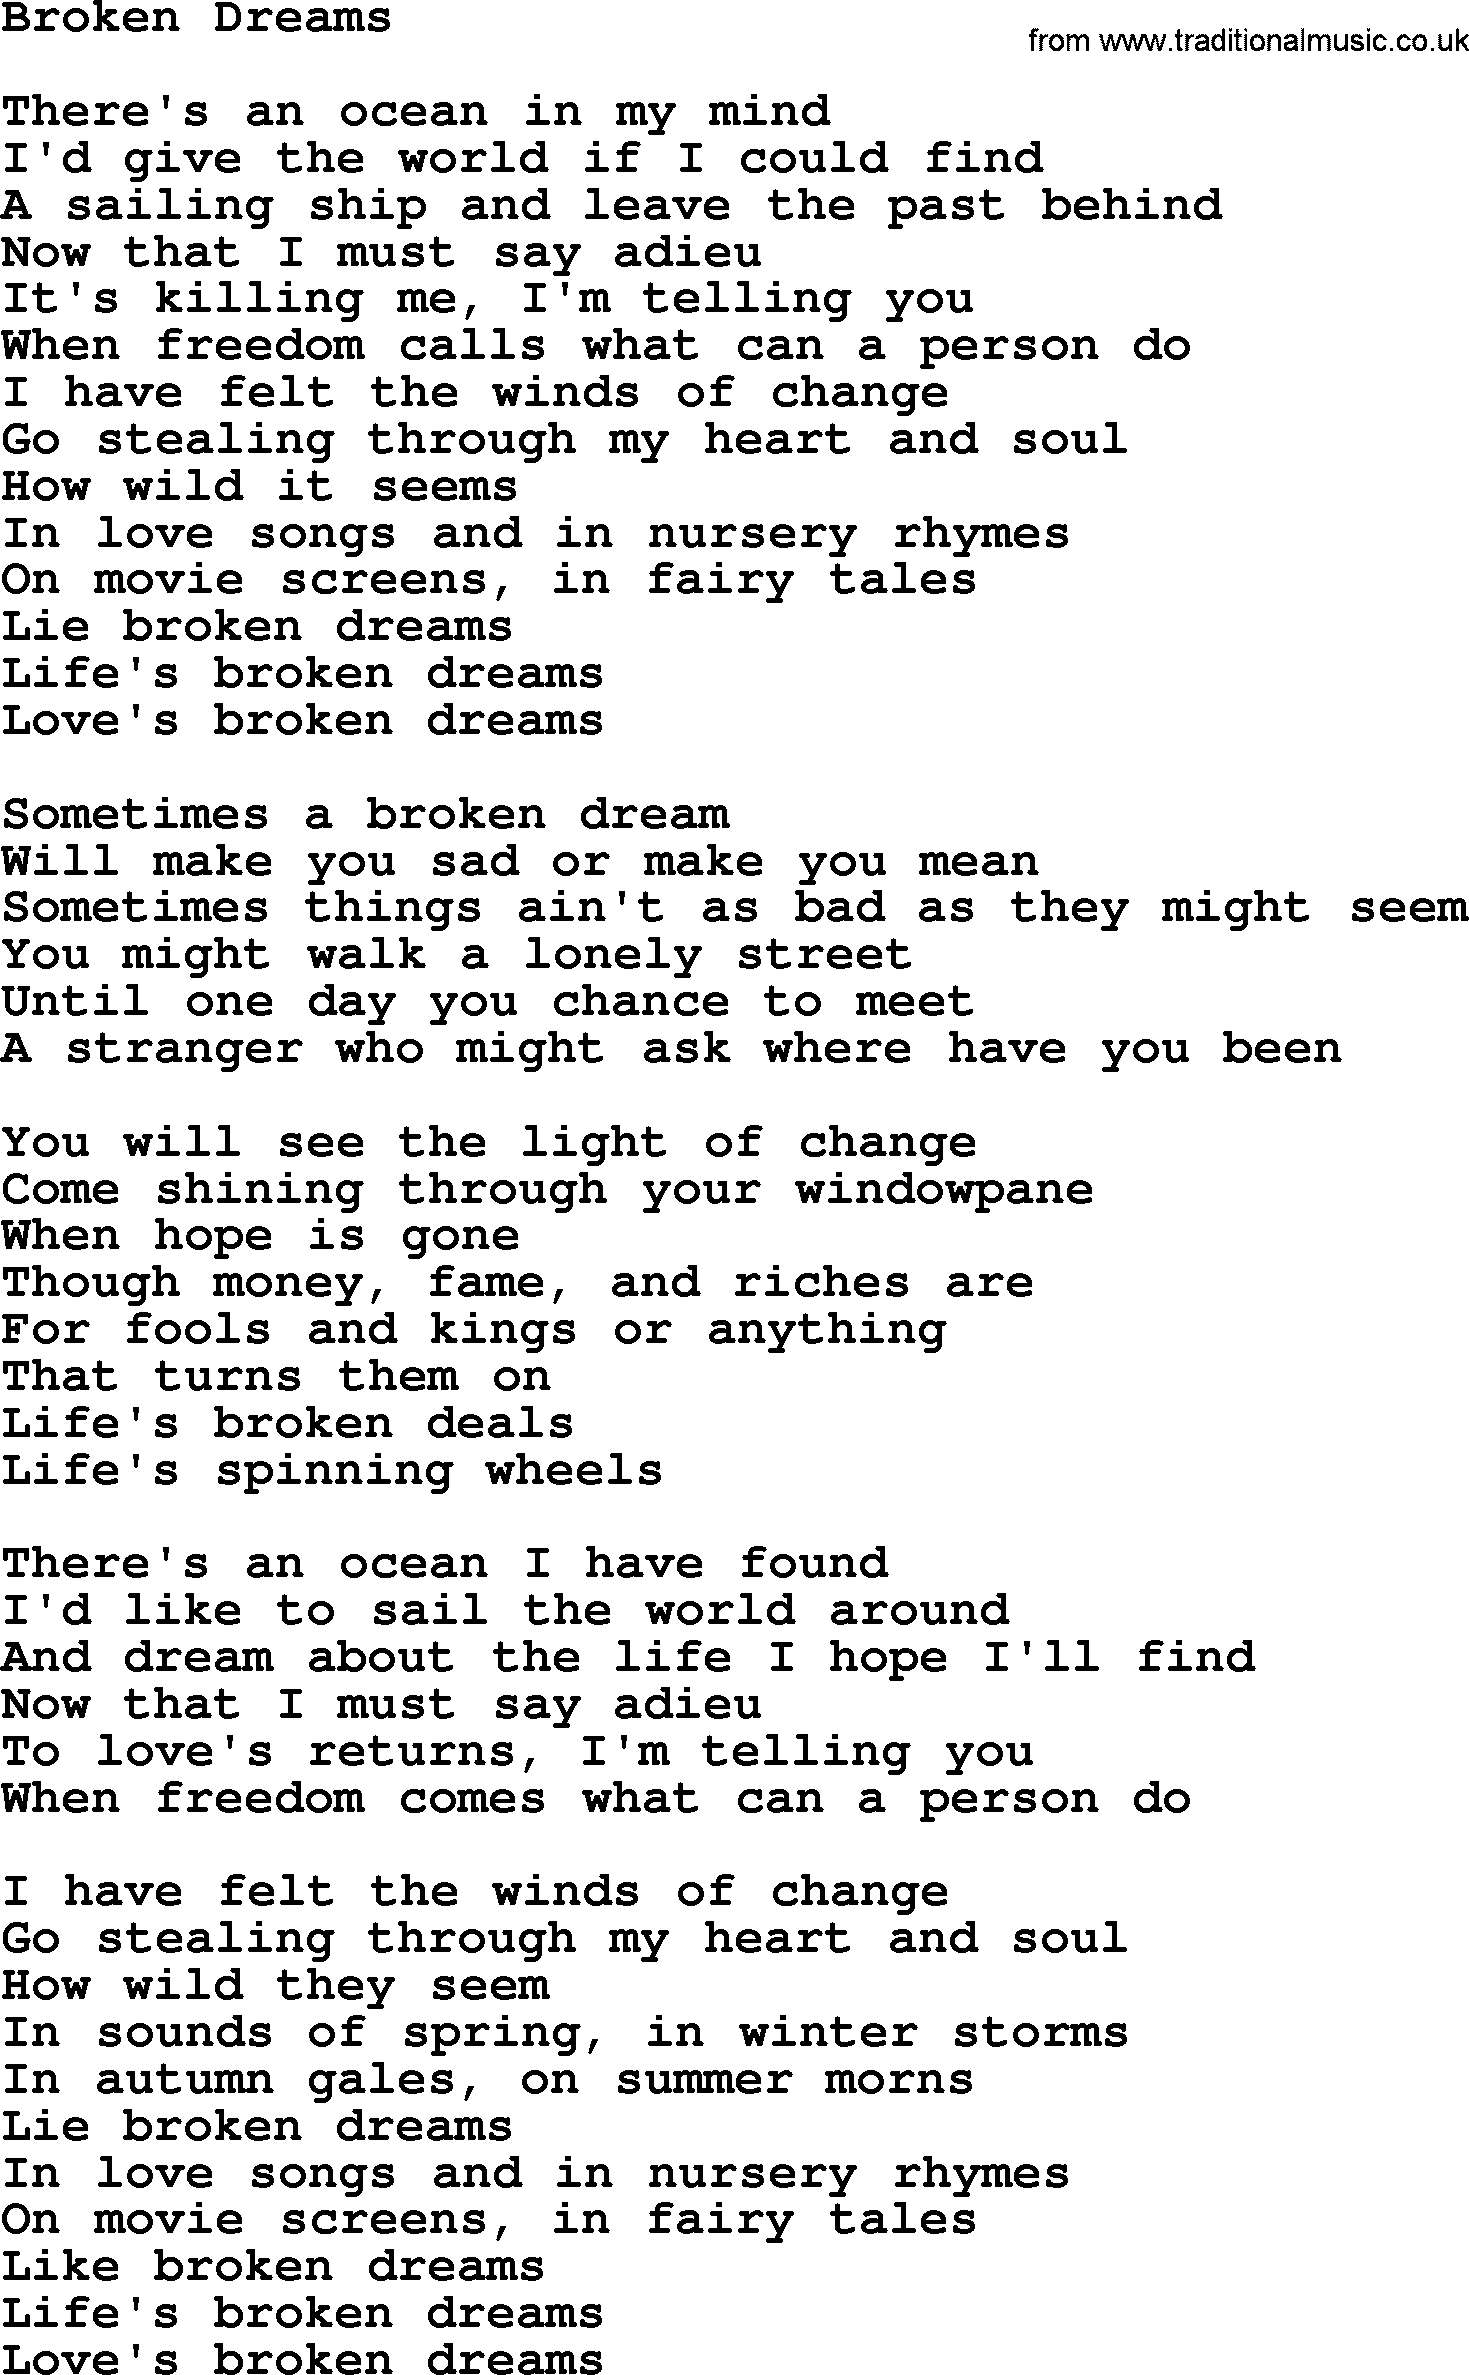 Gordon Lightfoot song Broken Dreams, lyrics